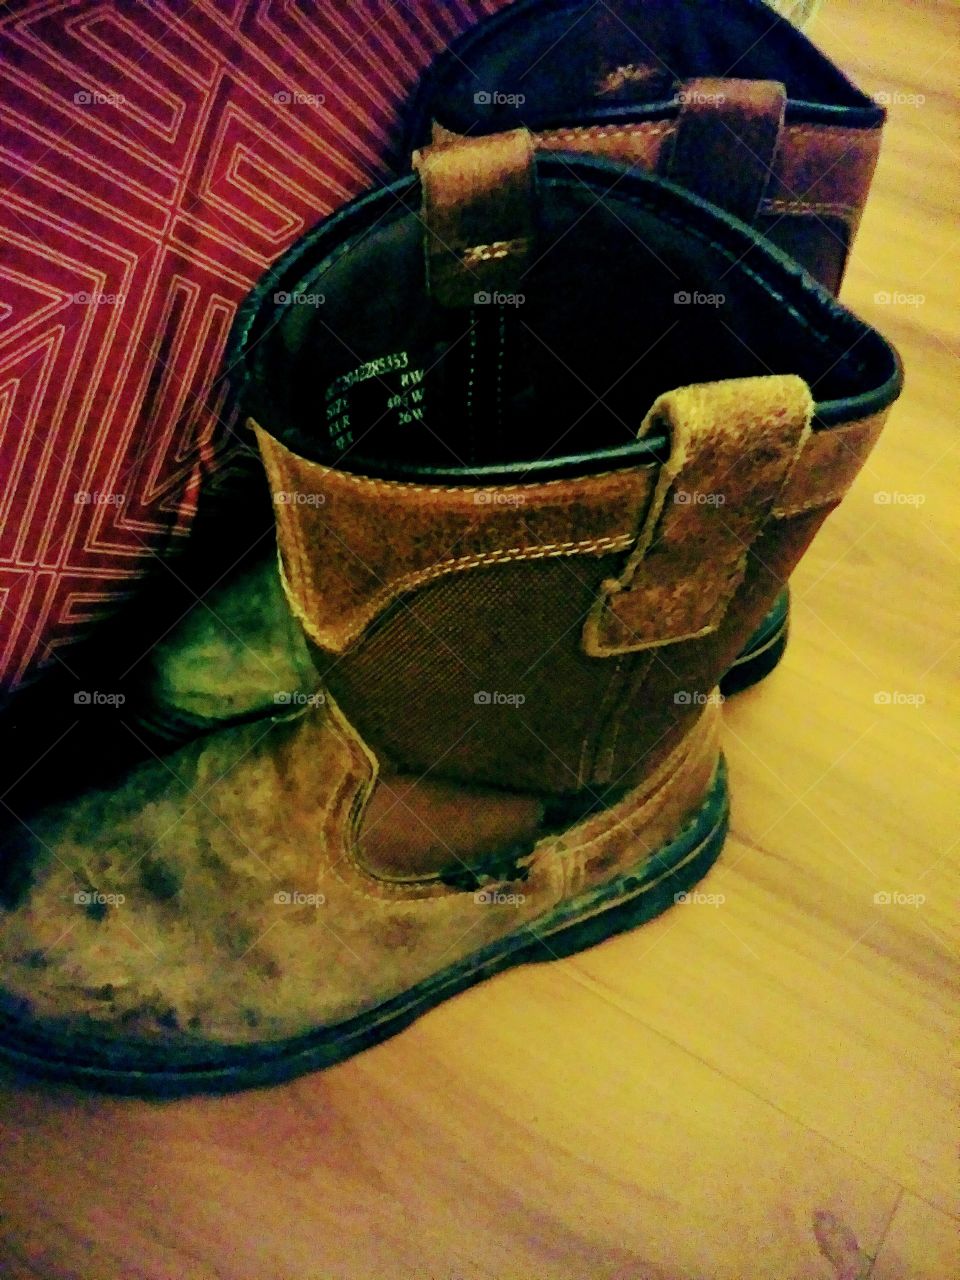 Rugged, worn, work boots......